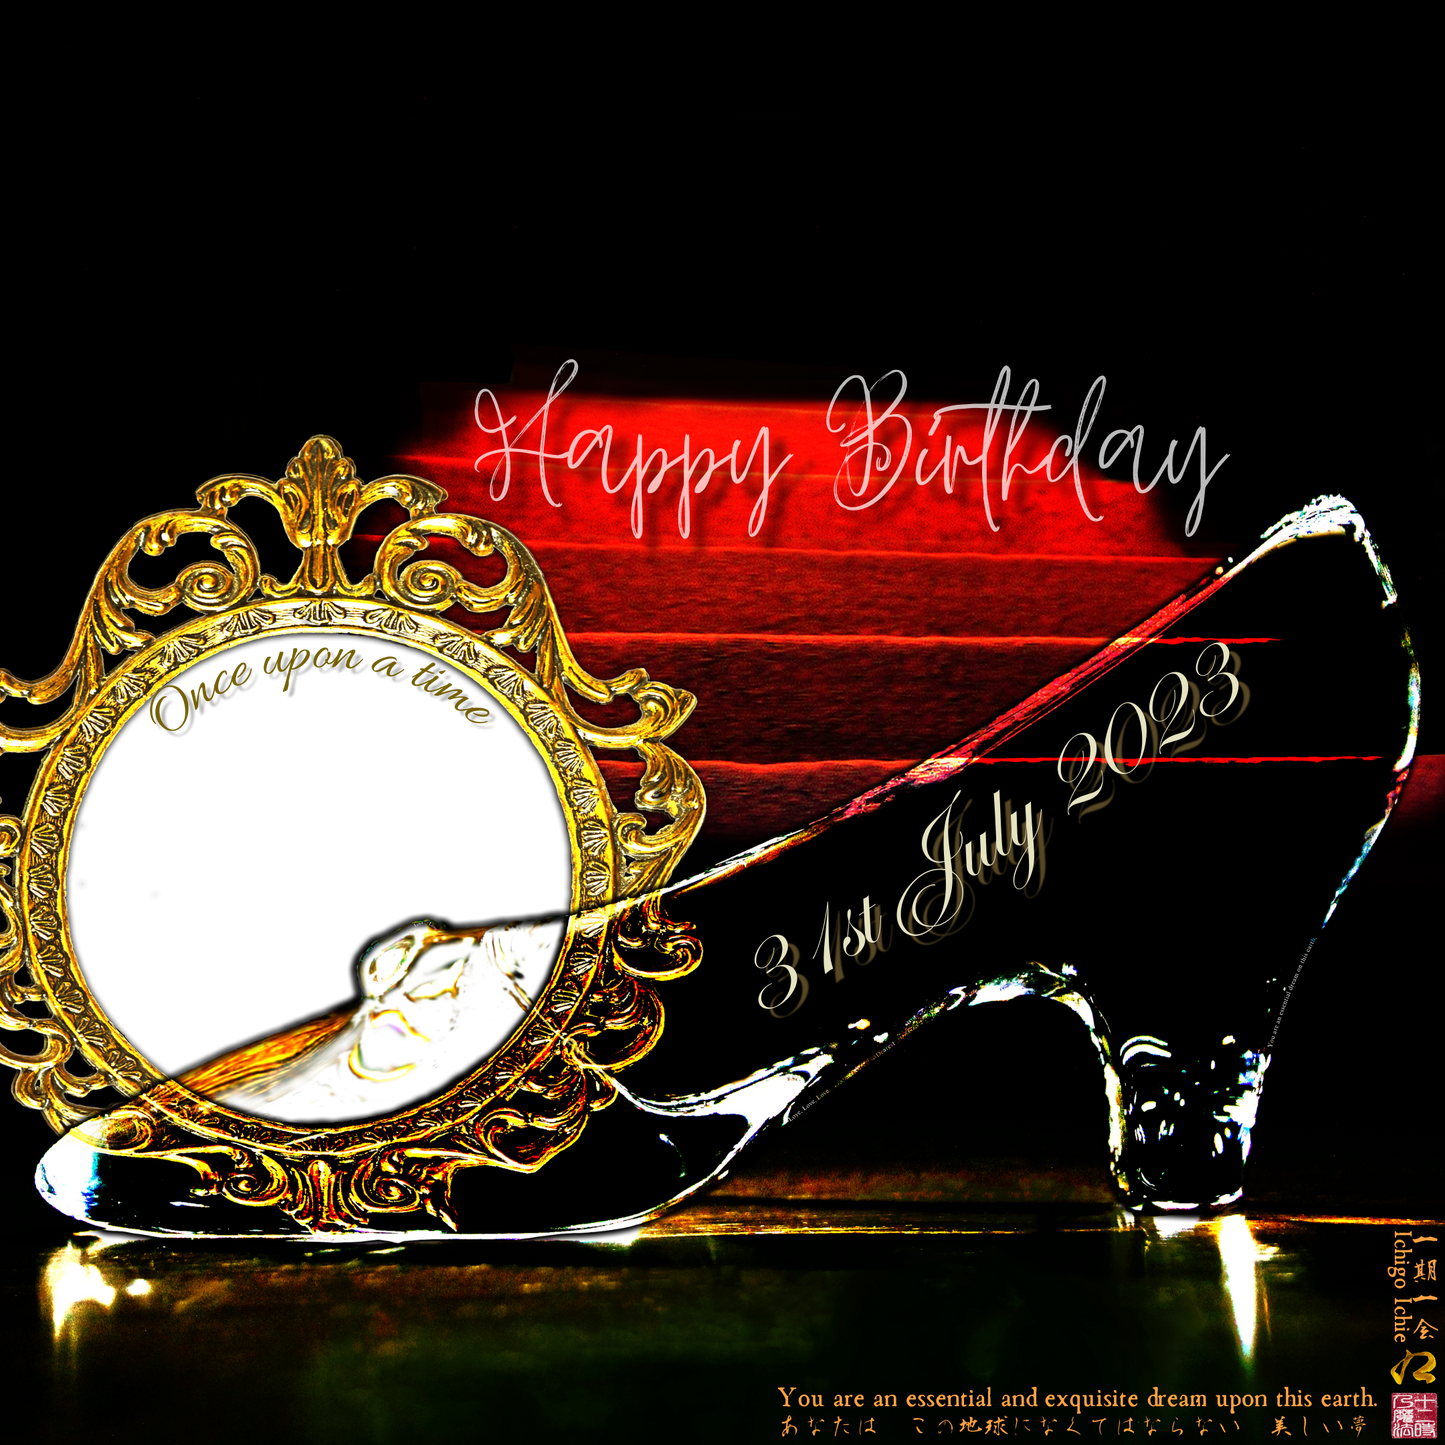 Happy Birthday Glass Slipper "Ichigo Ichie" 31st July 2023 the Left (1-of-1) NFT Art